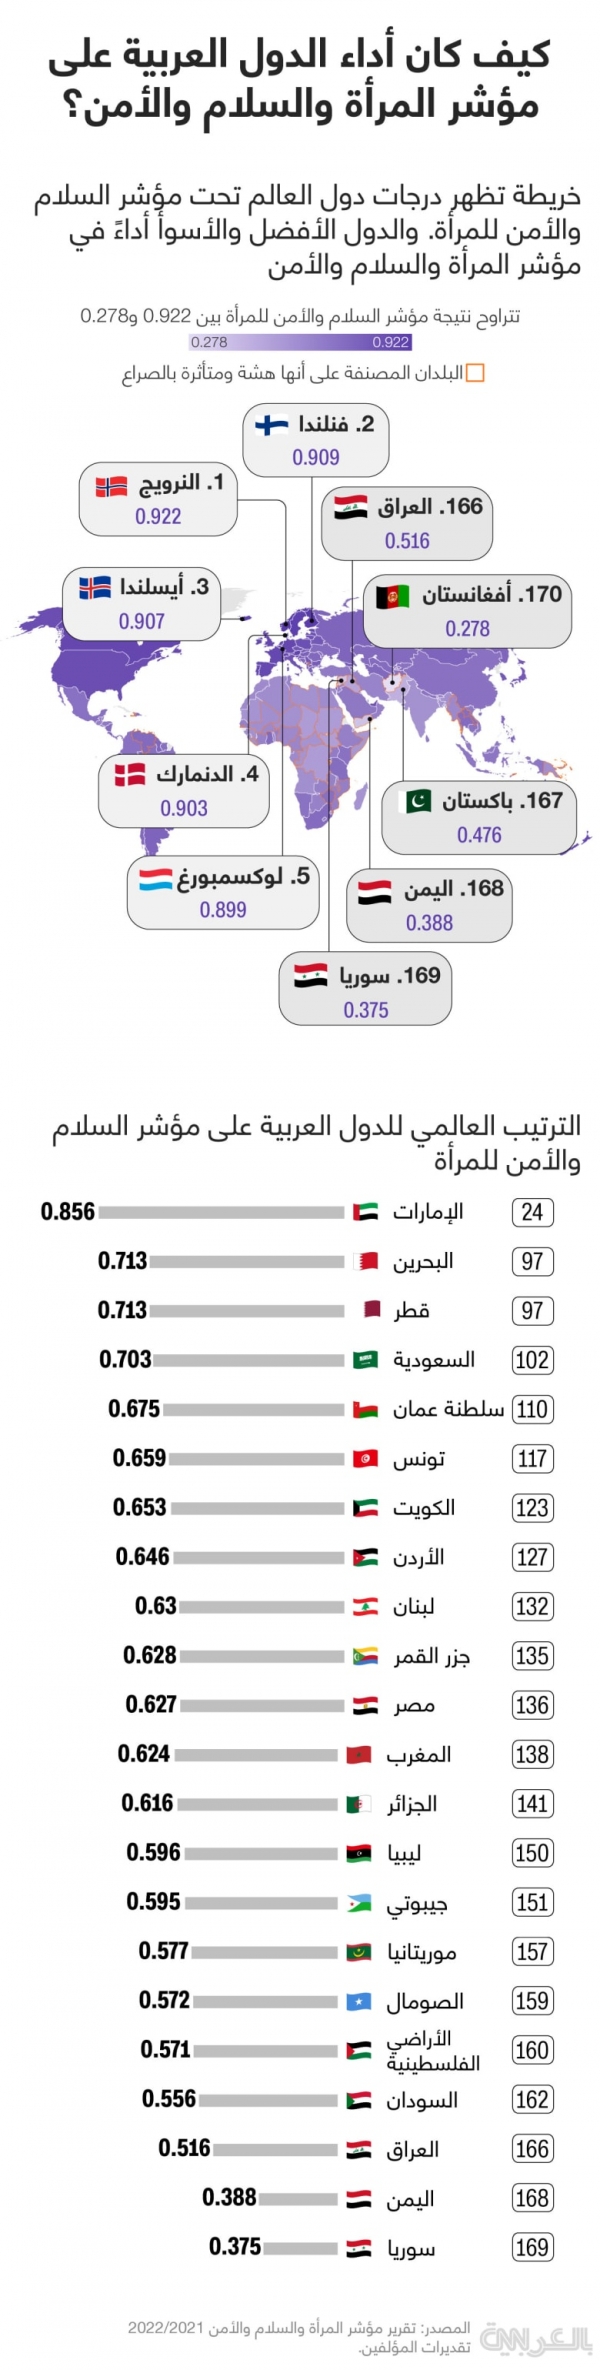 اليوم العالمي للمرأة 8 مارس: الإمارات تتصدر قائمة أداء الدول العربية في مؤشر المرأة والسلام والأمن واليمن وسوريا في ذيل القائمة